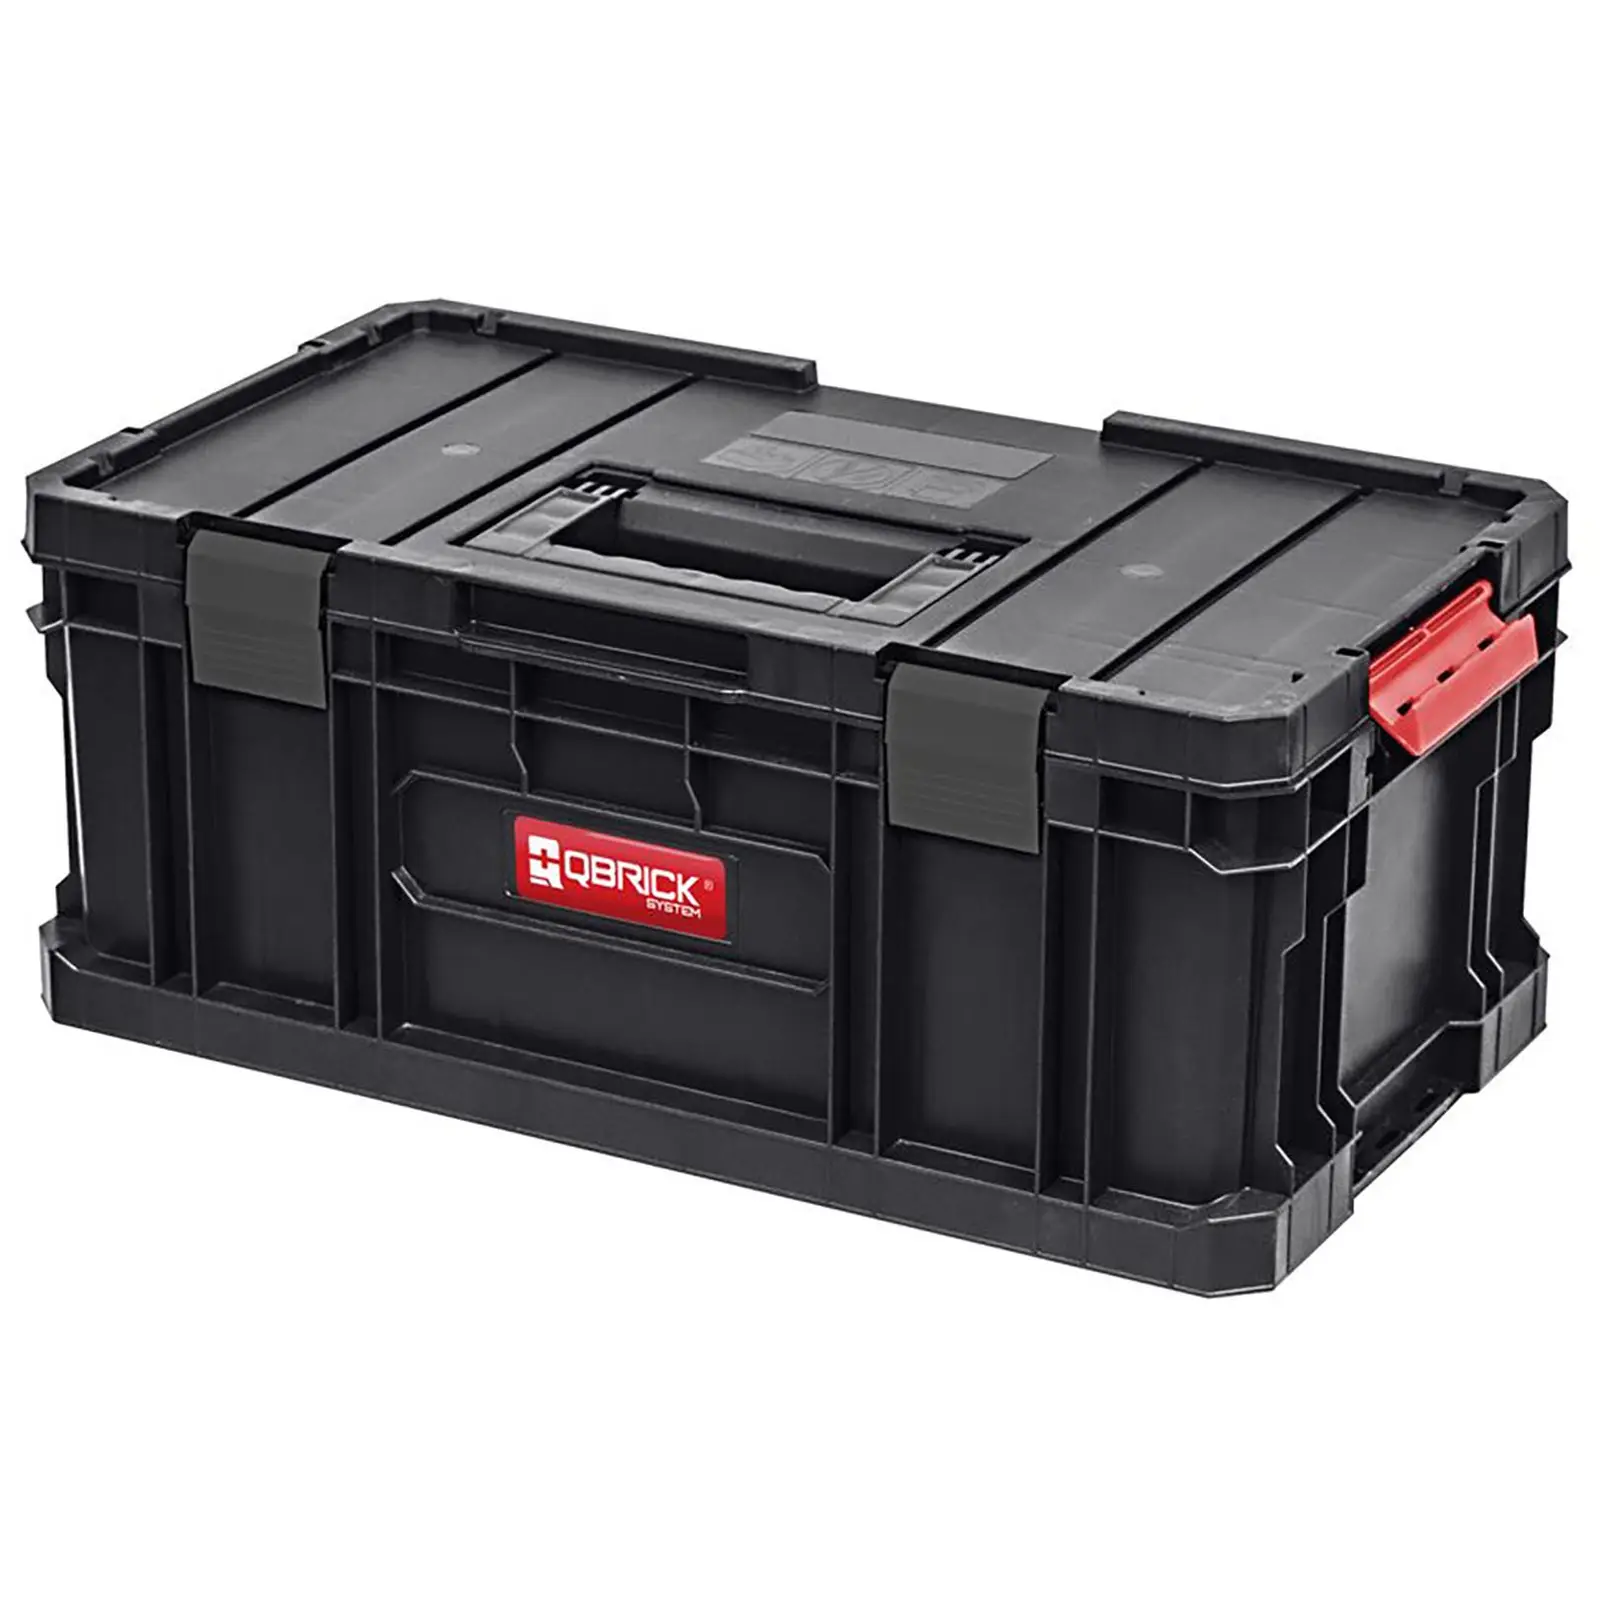 Værktøjskasser med rullebræt – sæt inkl. 3 værktøjskasser og 1 skruekasse